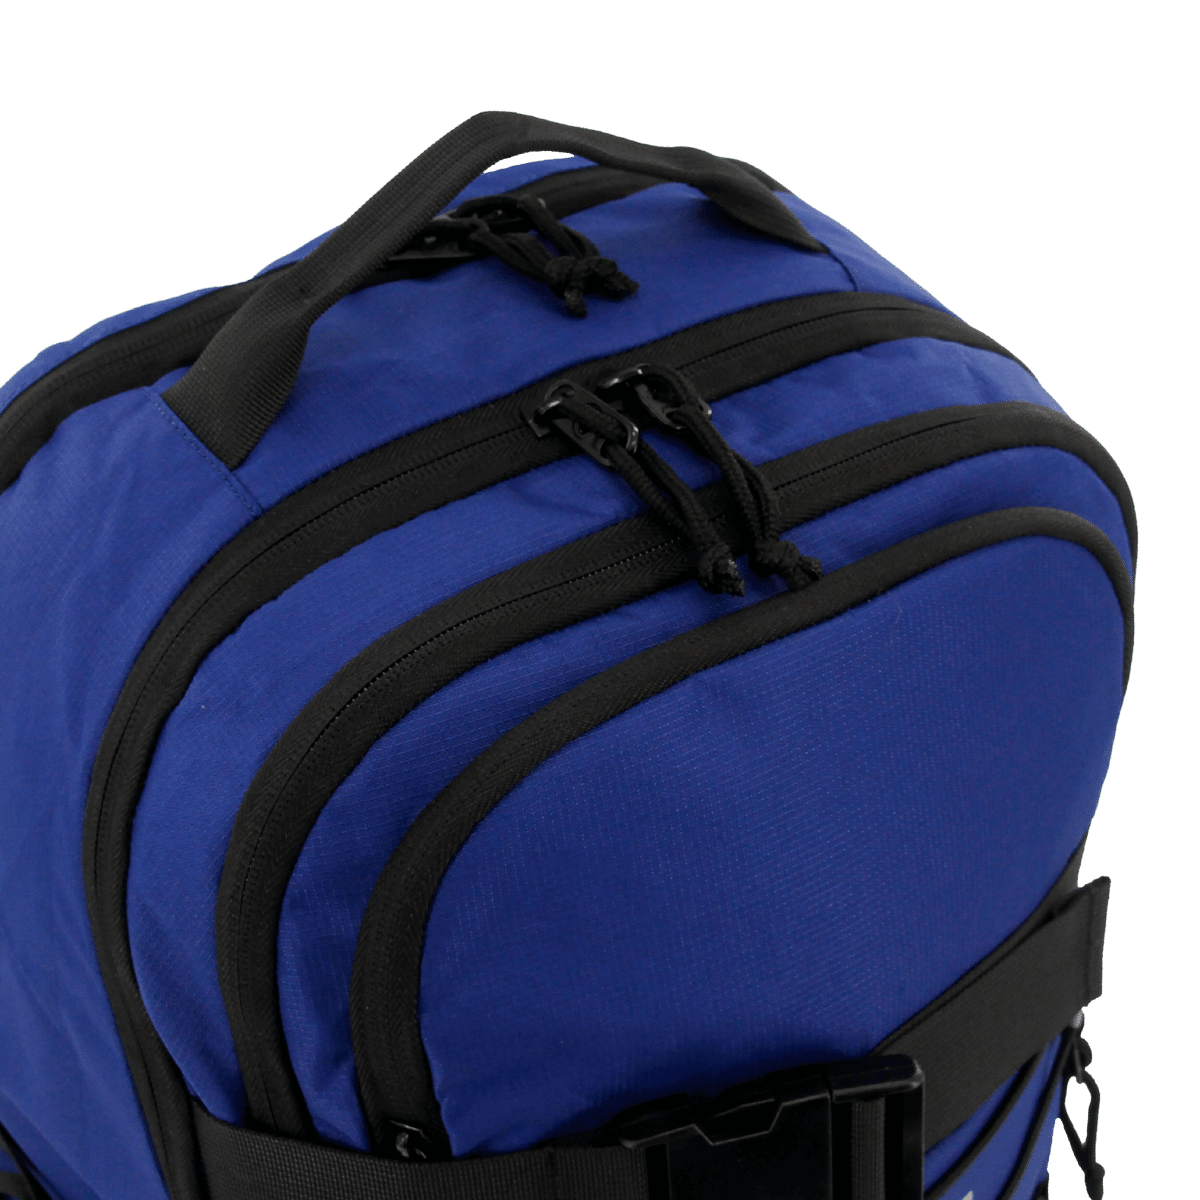 Stride Laptop Backpack - JWorldstore